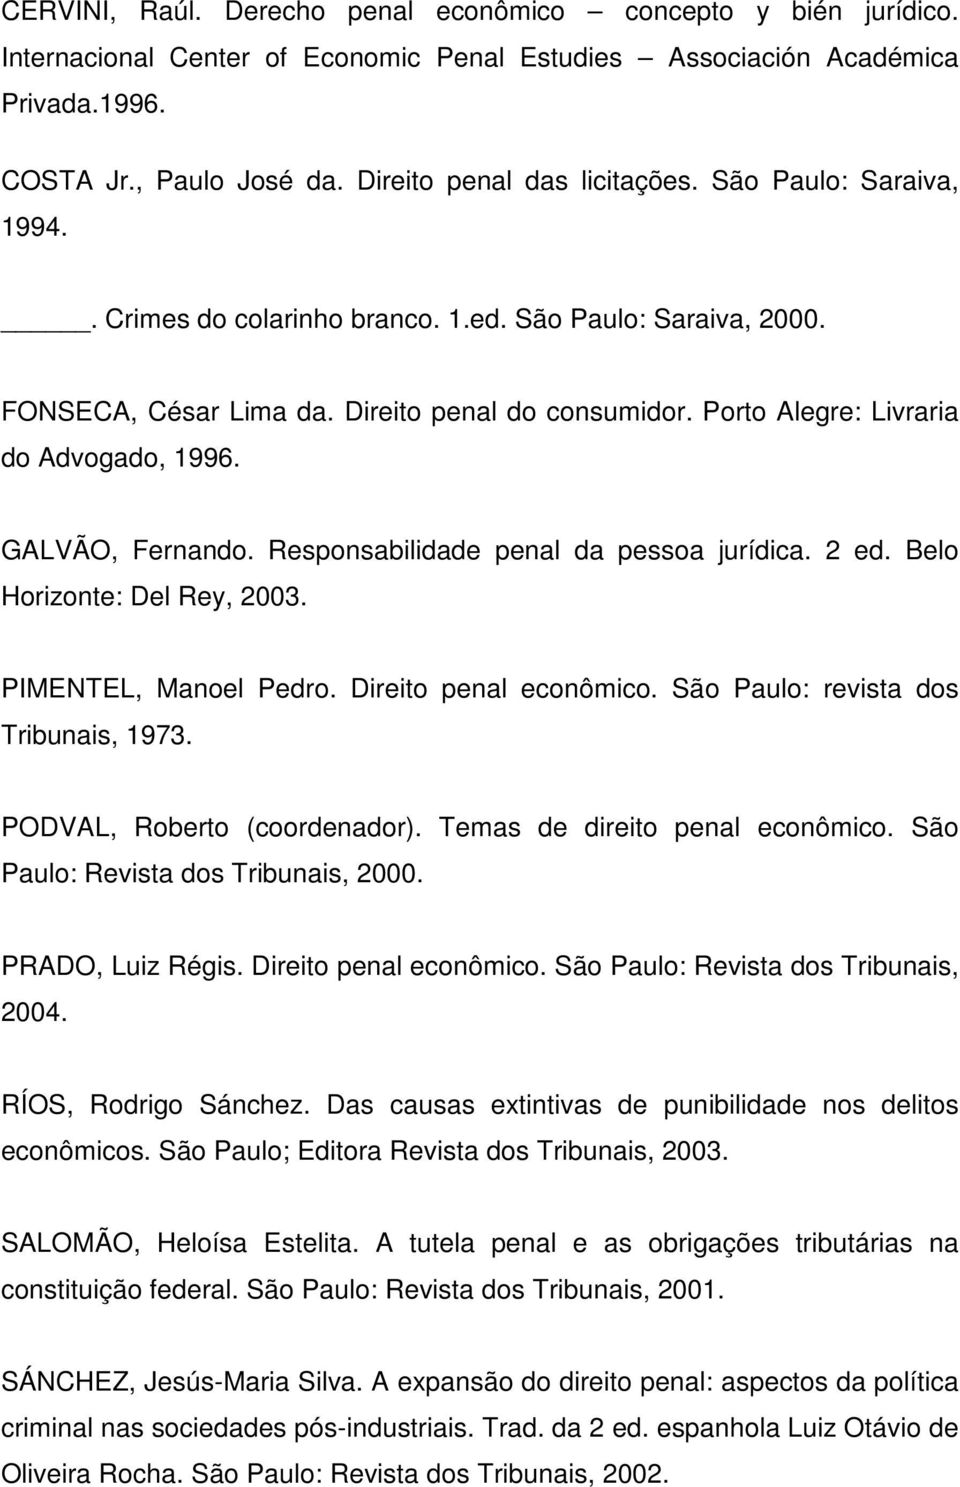 Porto Alegre: Livraria do Advogado, 1996. GALVÃO, Fernando. Responsabilidade penal da pessoa jurídica. 2 ed. Belo Horizonte: Del Rey, 2003. PIMENTEL, Manoel Pedro. Direito penal econômico.